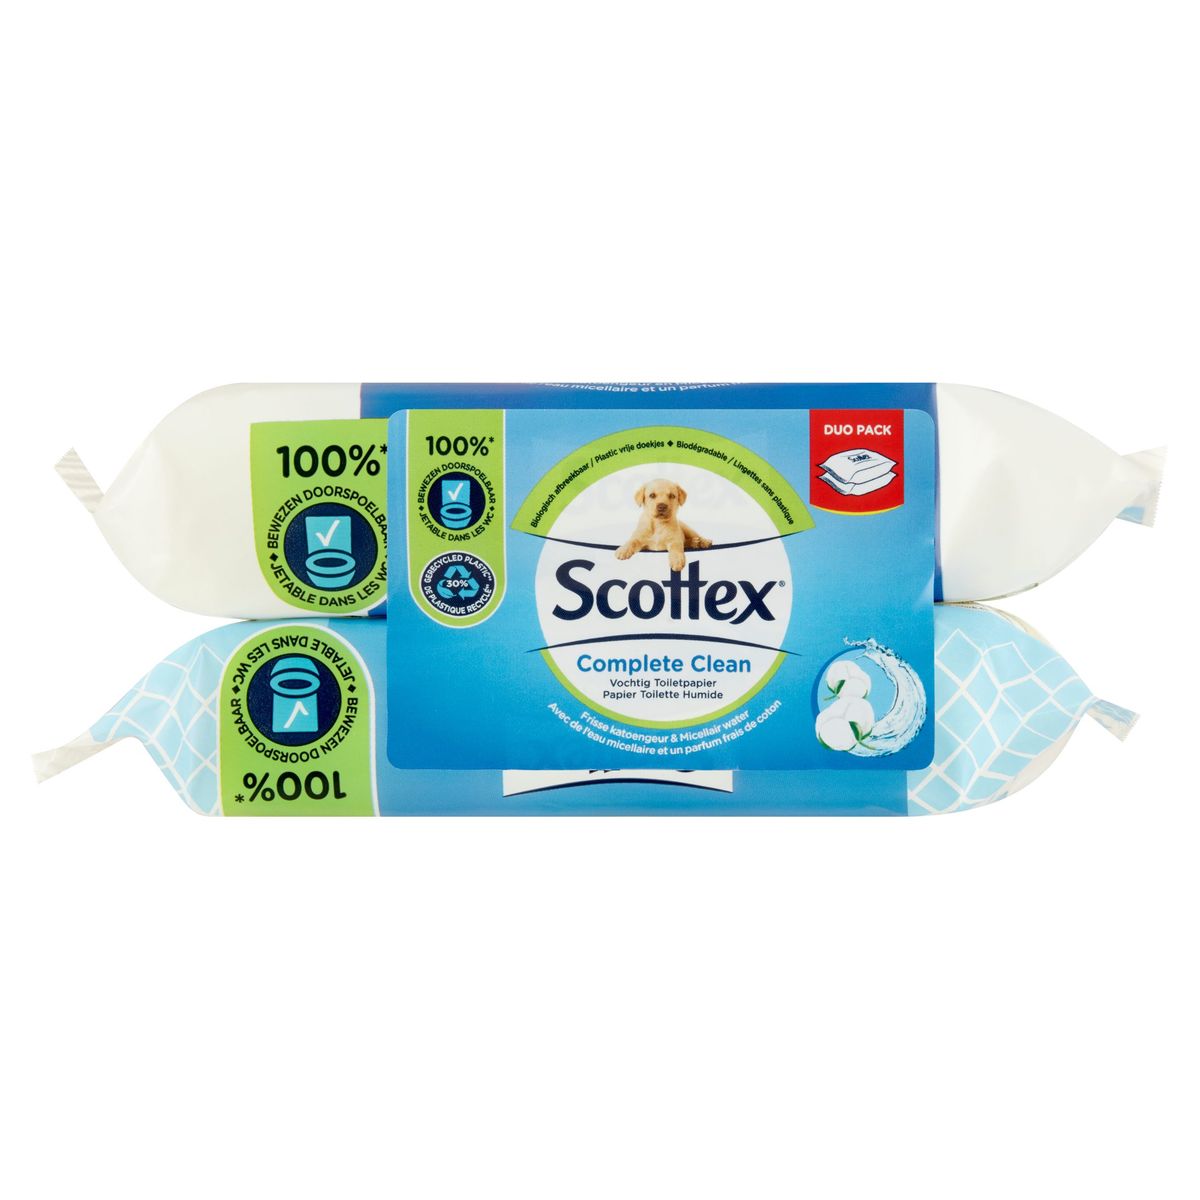 Scottex, Papier toilette, Humide, Complete Clean, 84 pc